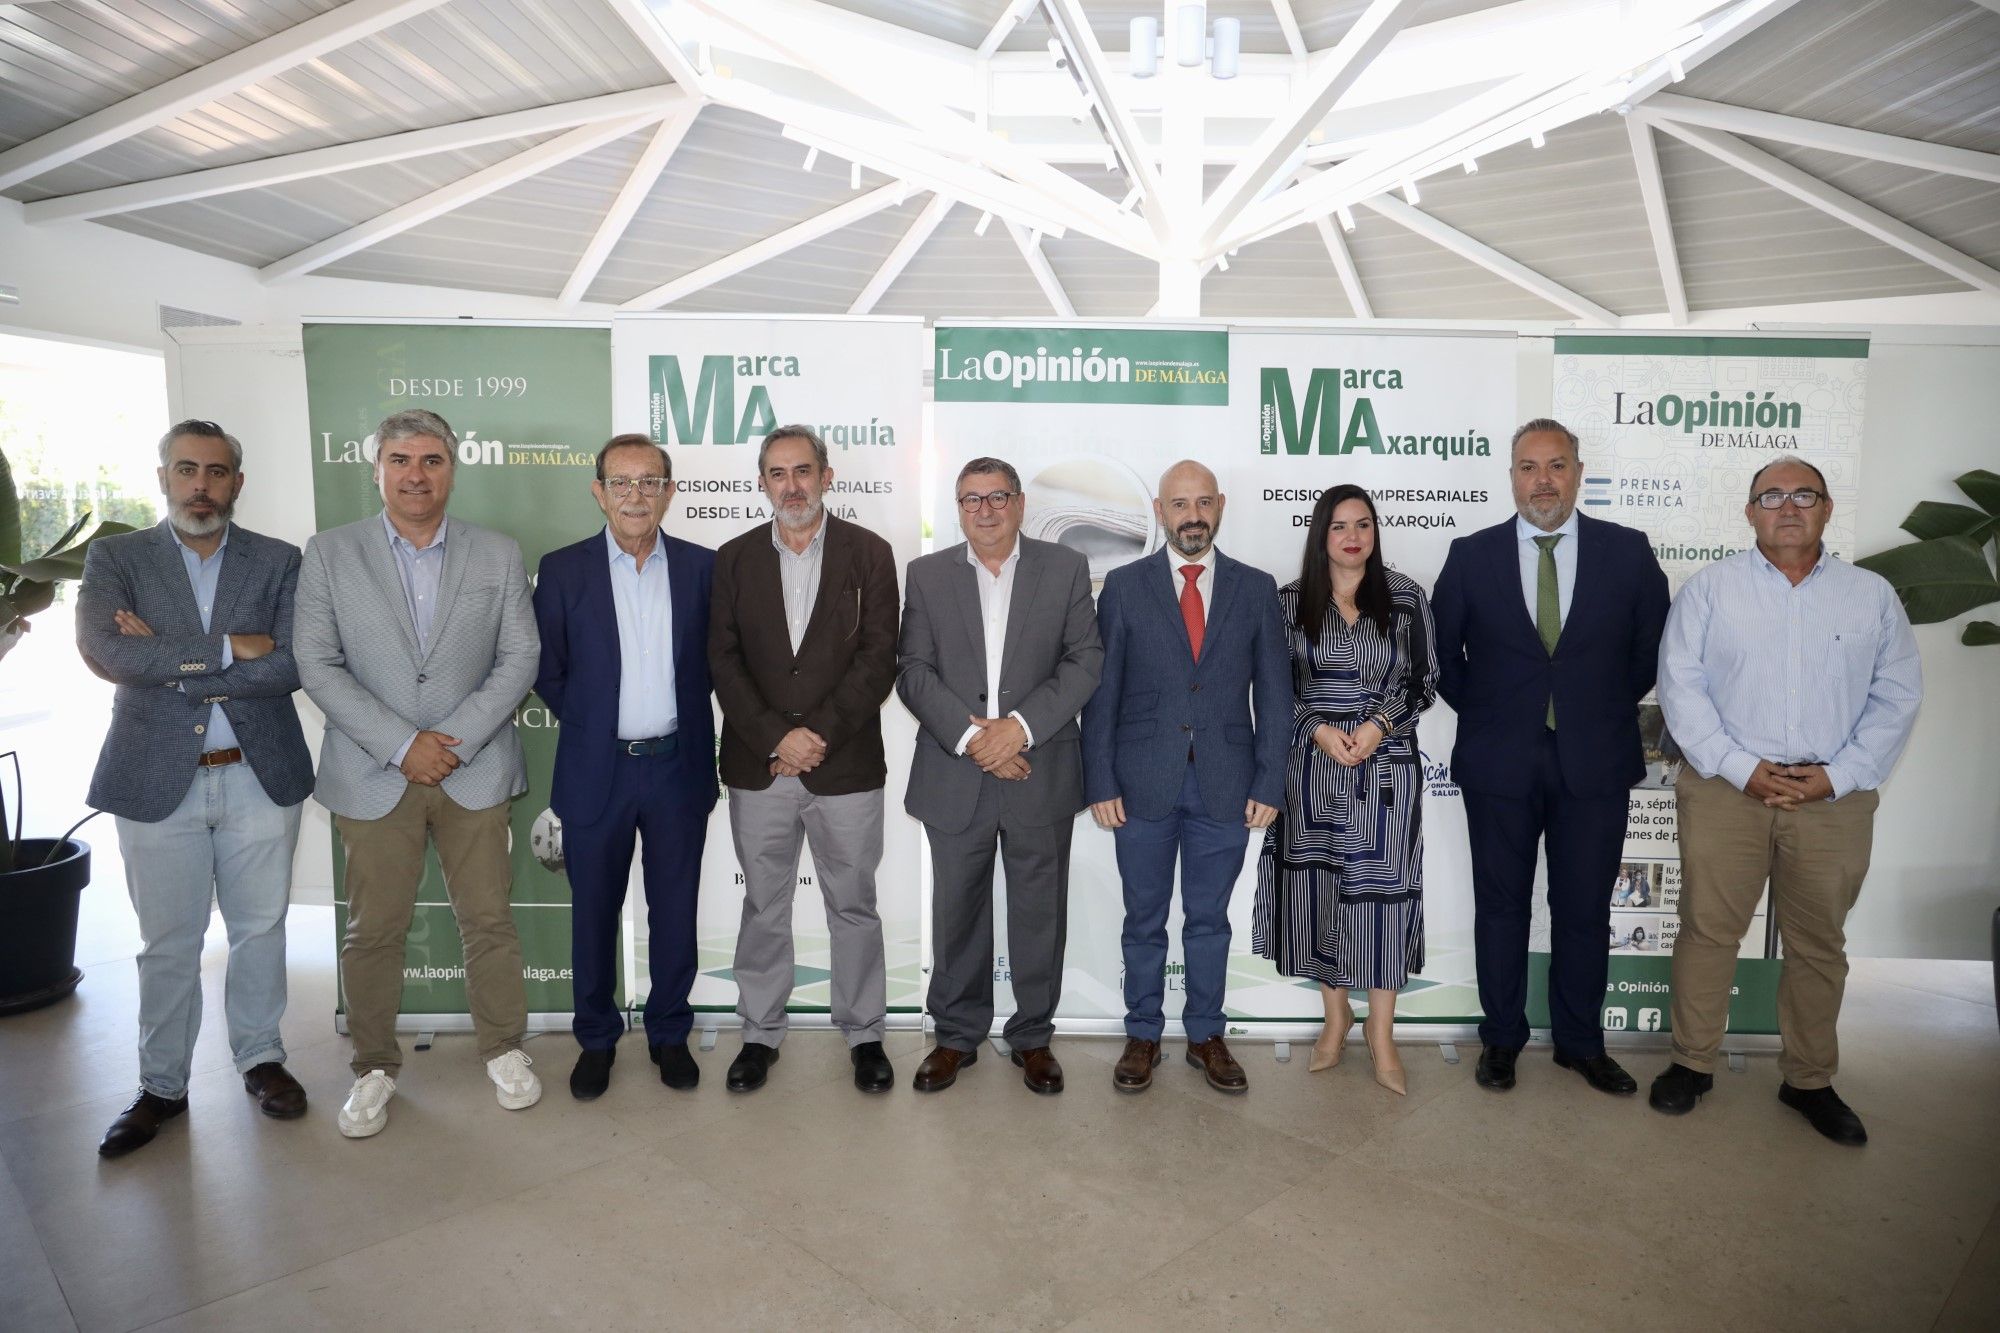 La II edición del evento Marca Axarquía, organizado por La Opinión de Málaga y Prensa Ibérica, en imágenes